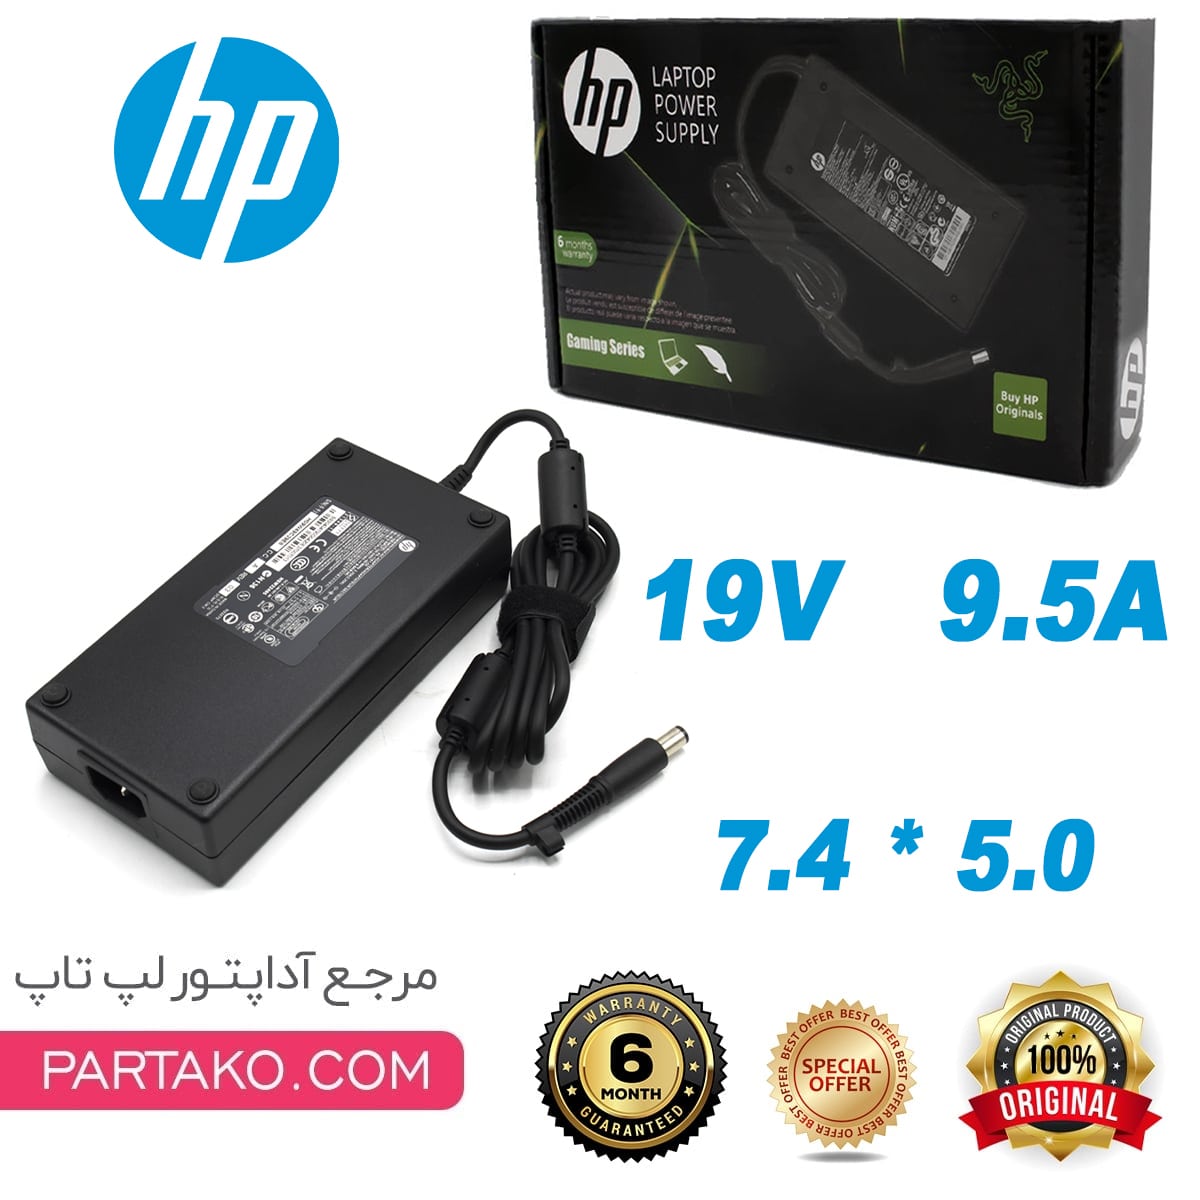 HP 19V 9.5A 7.4 * 5.0